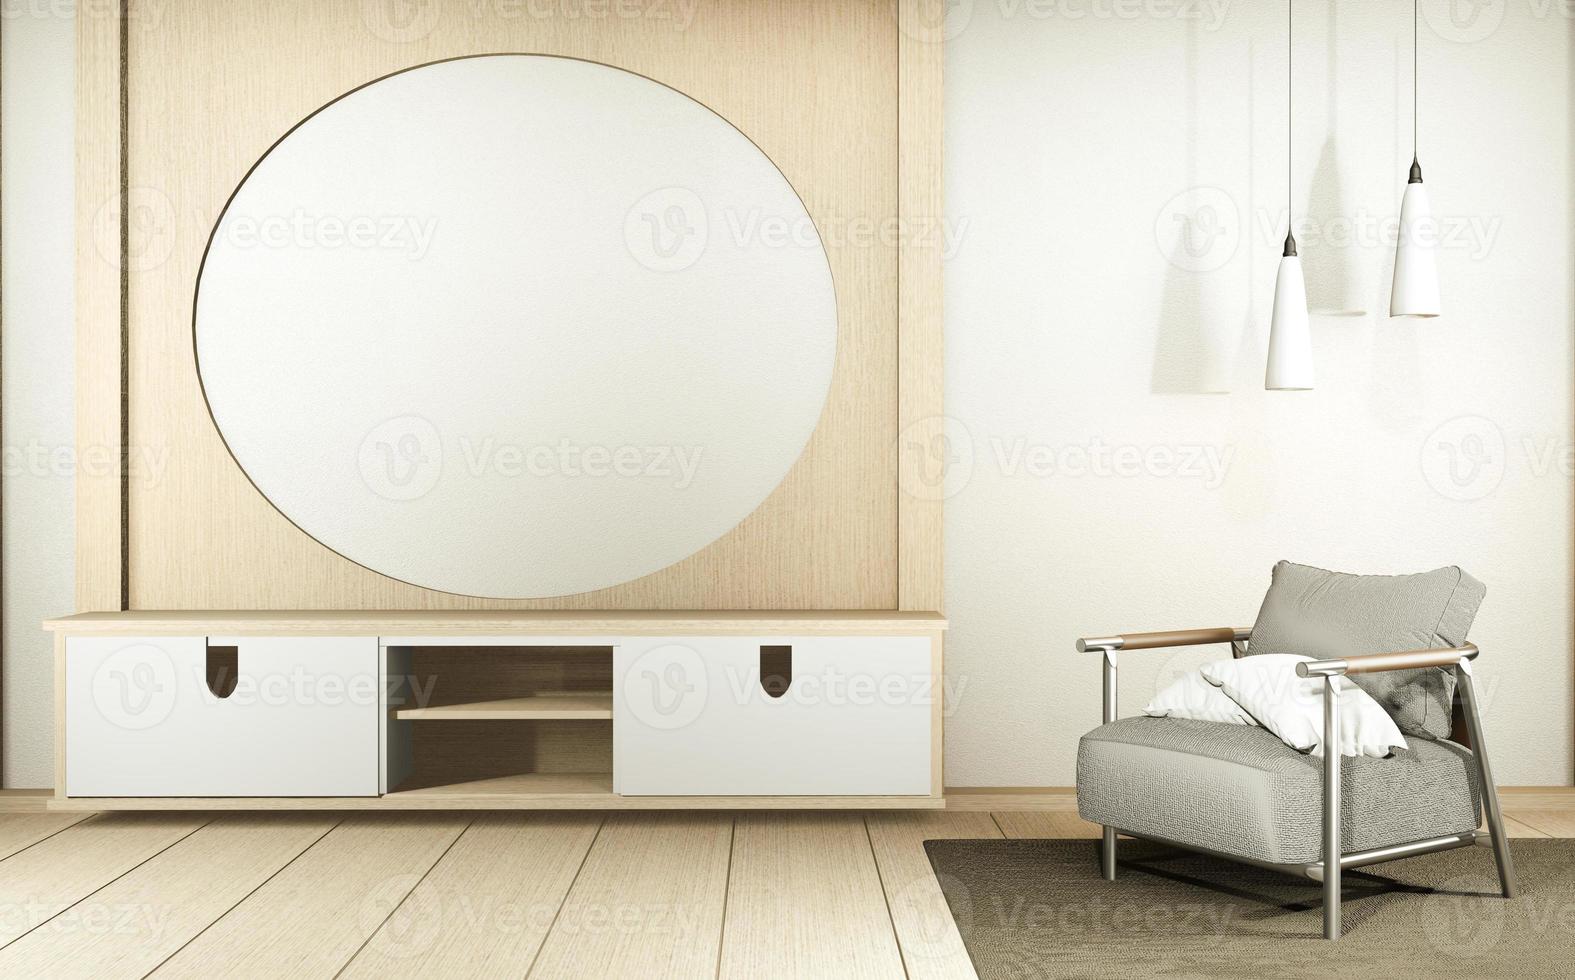 gabinete de tv en la habitación interior vacía blanca de estilo japonés, representación 3d foto